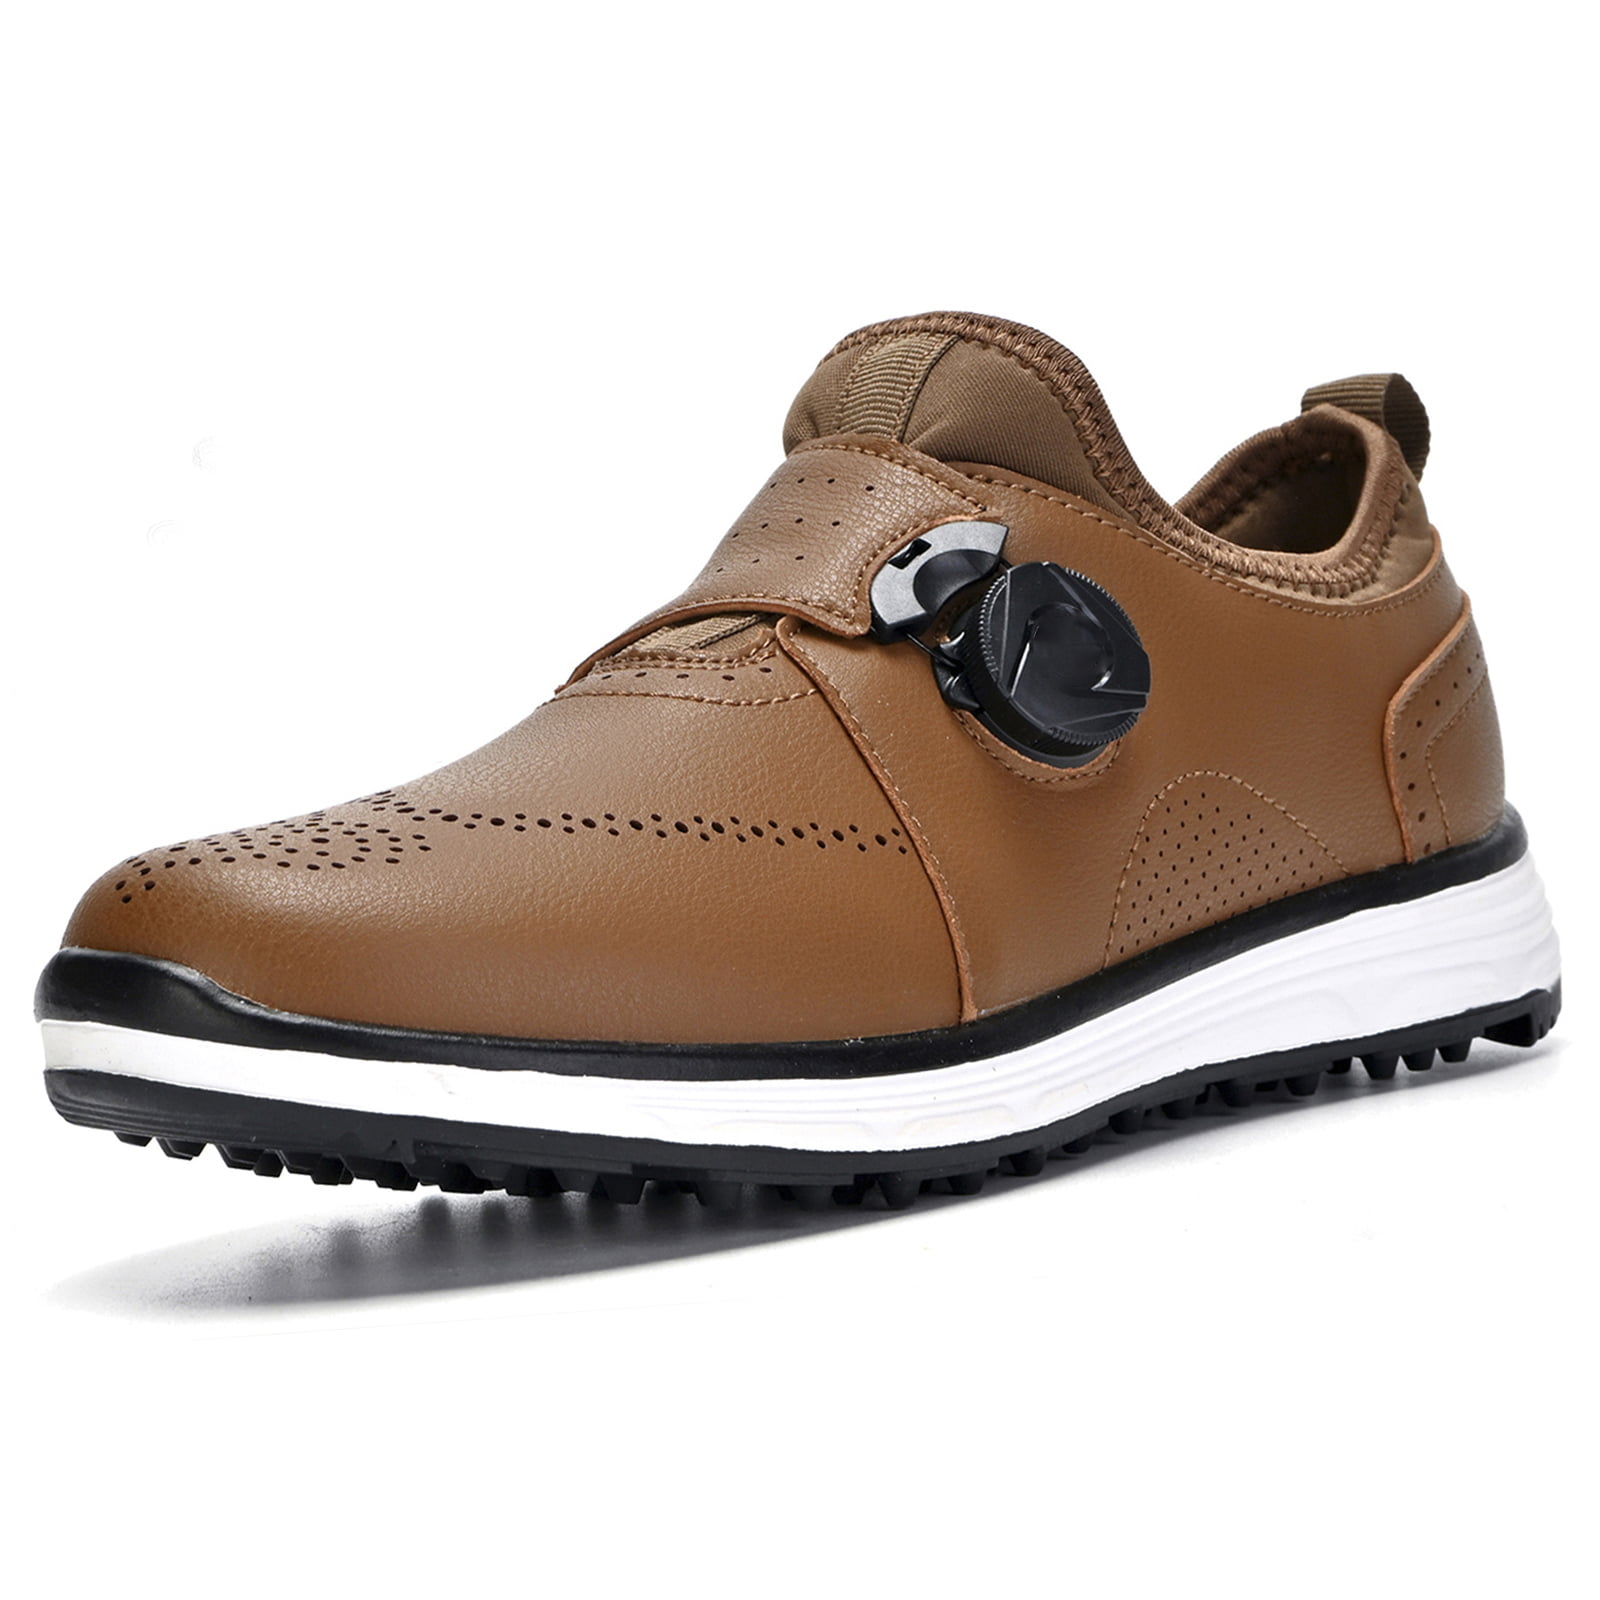 Toepassen Laster Zelfgenoegzaamheid Men's Golf Shoes Spikeless Golf Shoe Man Golf Sport Shoe Comfy Waterproof  Golfshoe Golf Sneakers - Walmart.com